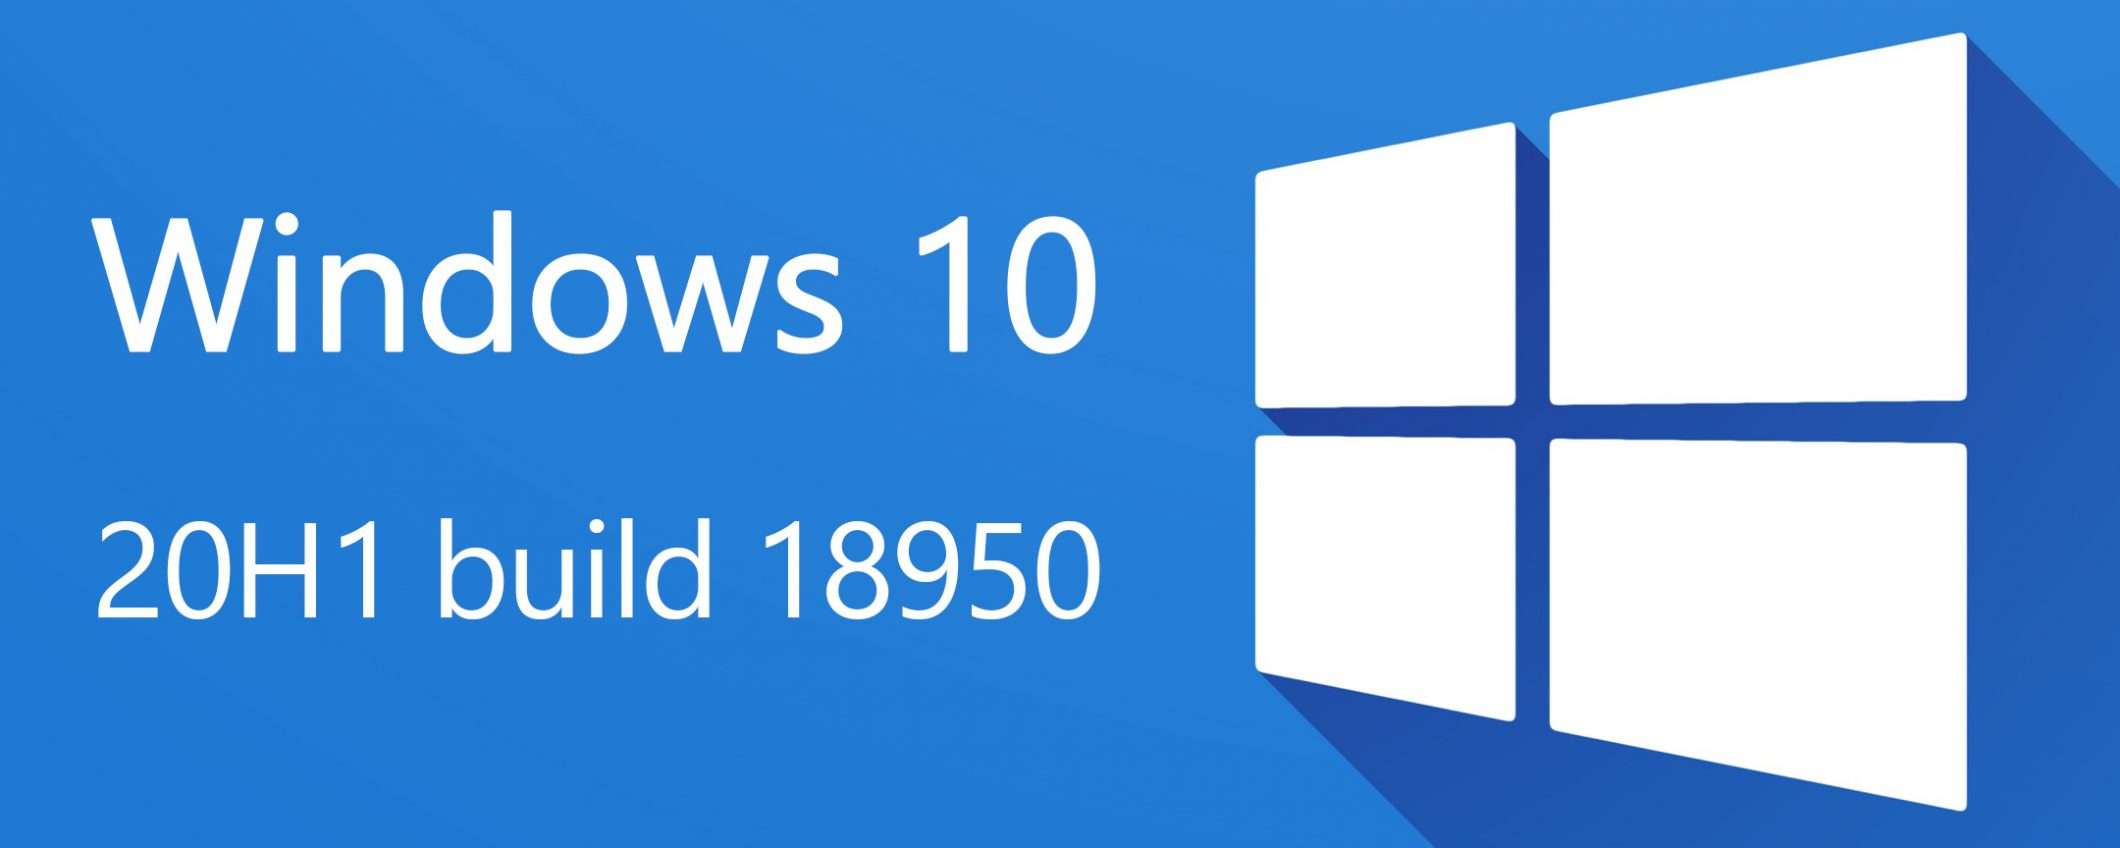 Windows 10 20H1, build 18950 e Cloud Download